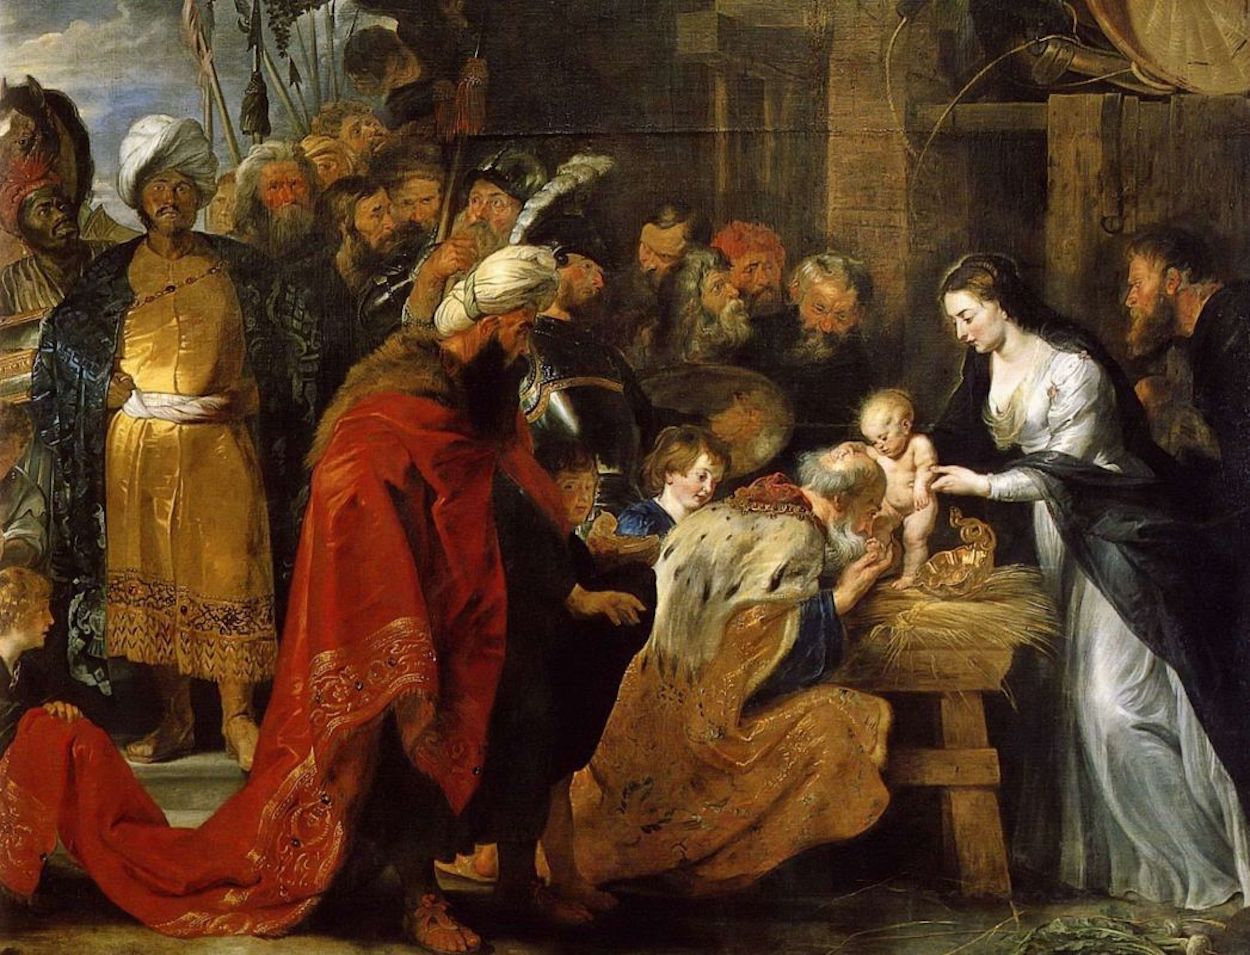 L'Adoration des mages by Peter Paul Rubens - 1616-1617 - 251 × 338 cm Musée des beaux-arts de Lyon